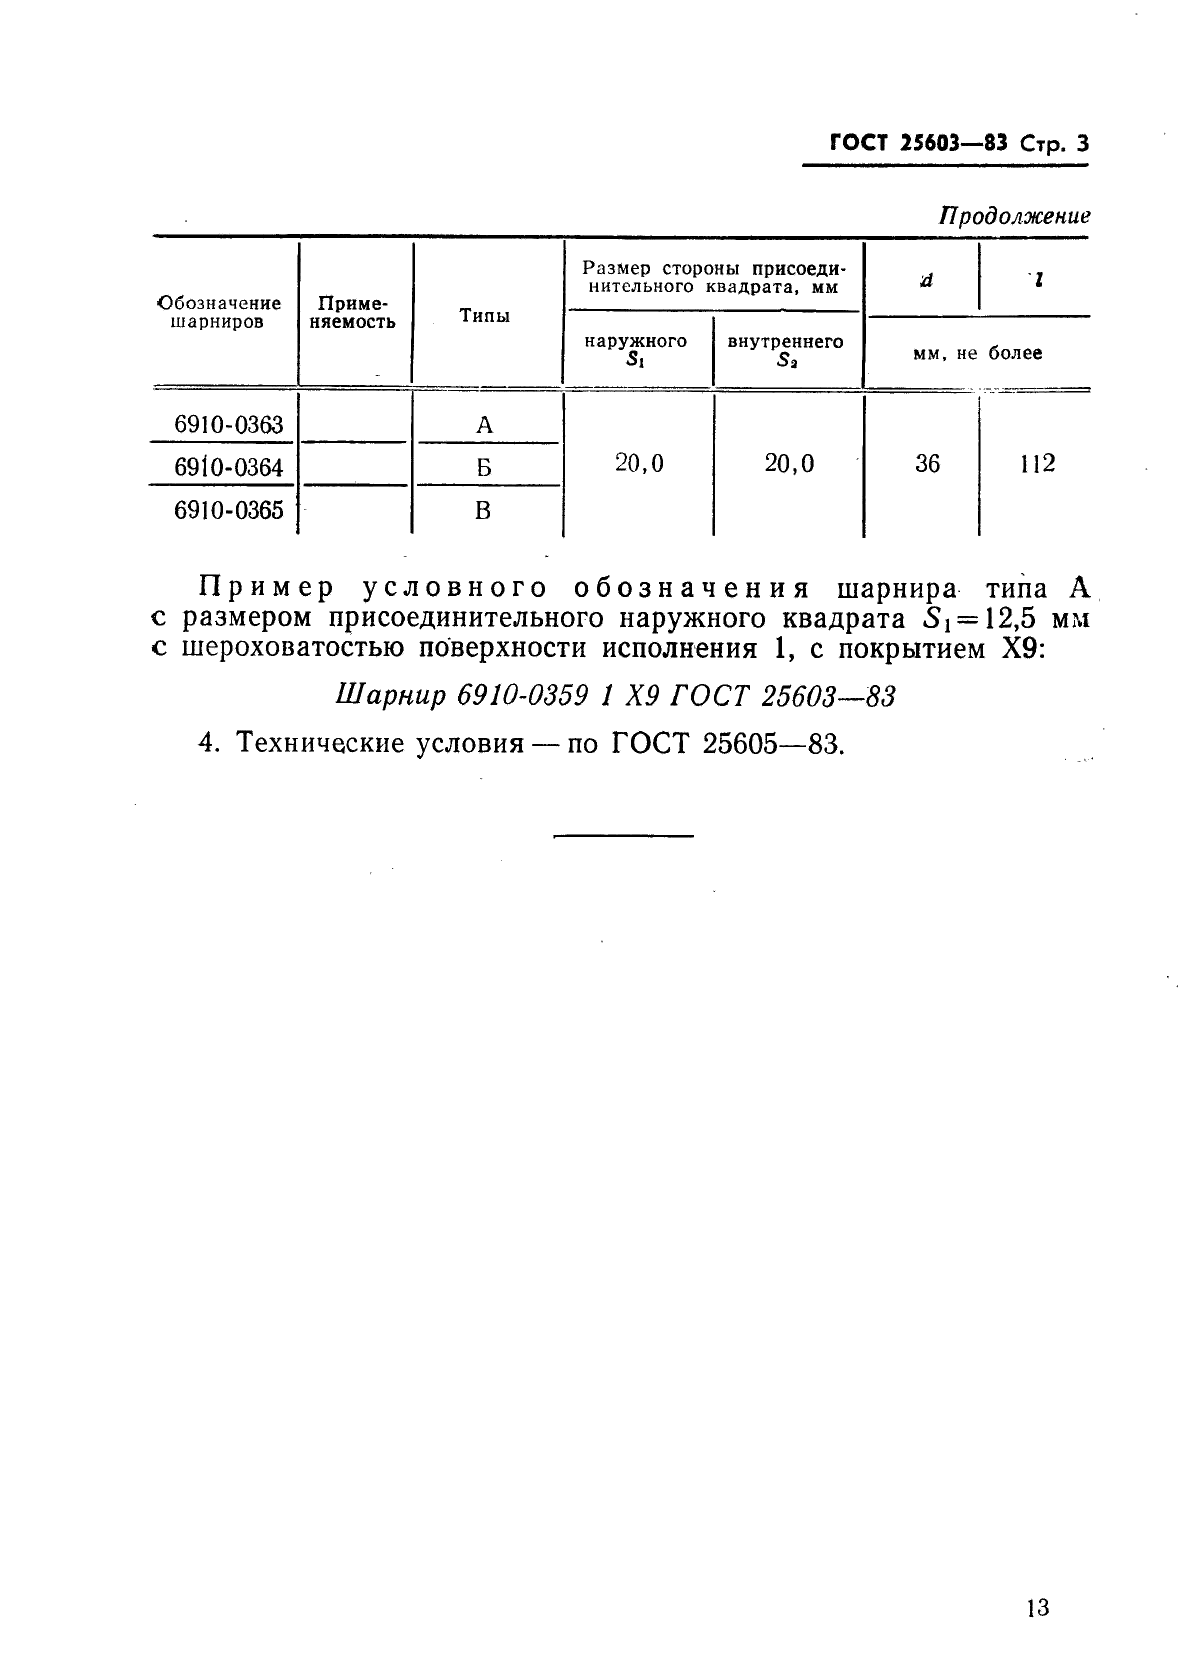 ГОСТ 25603-83 Шарниры. Типы и основные размеры (фото 3 из 3)